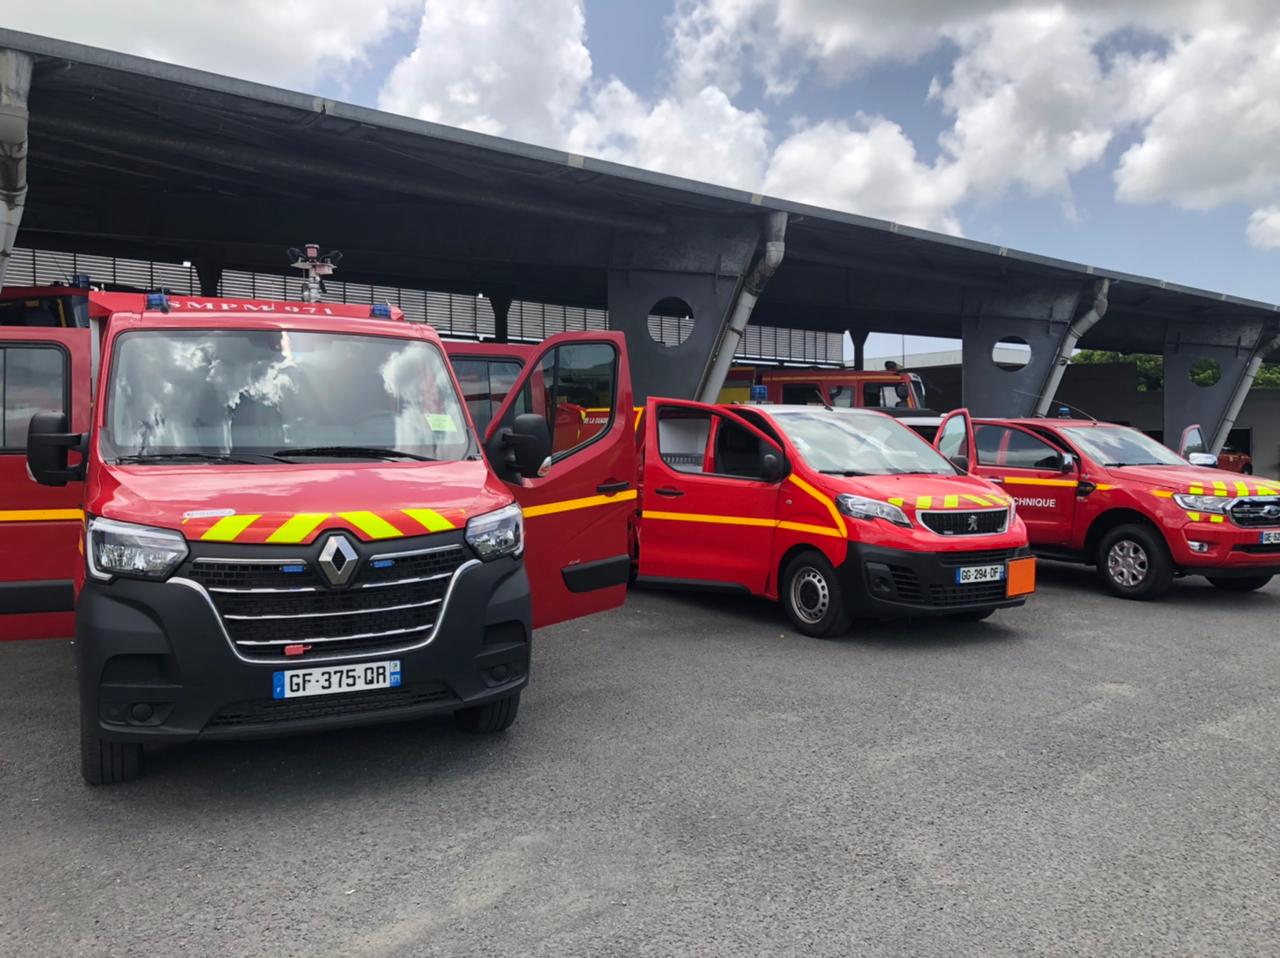     3 nouveaux véhicules pour les sapeurs-pompiers

